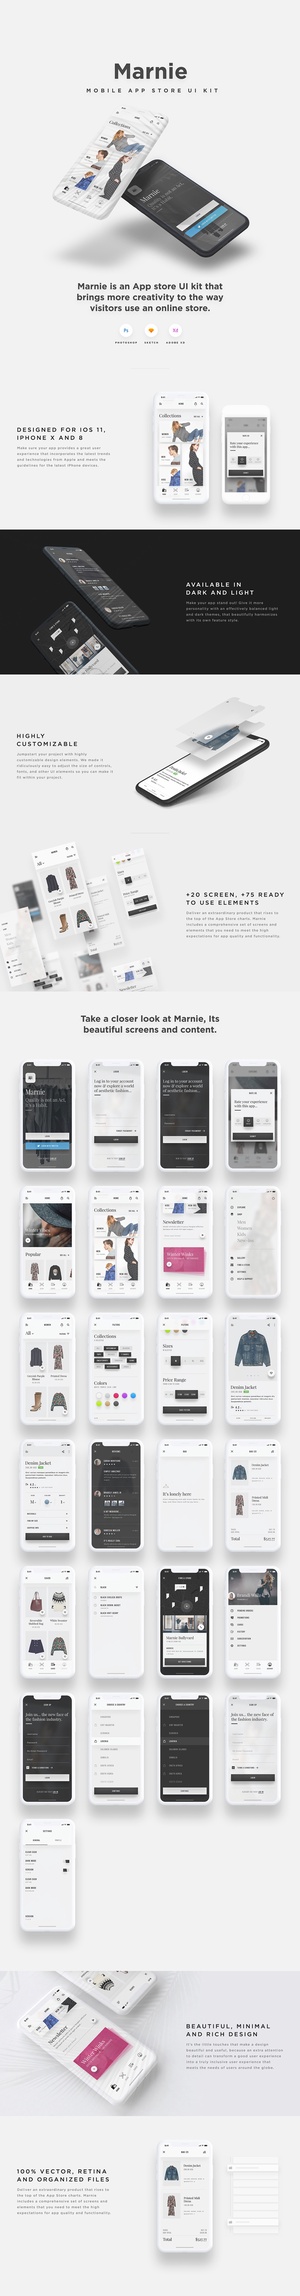 Marnie – Ecommerce Mobile App UI Kit – Adobe XD UI Kit Sample